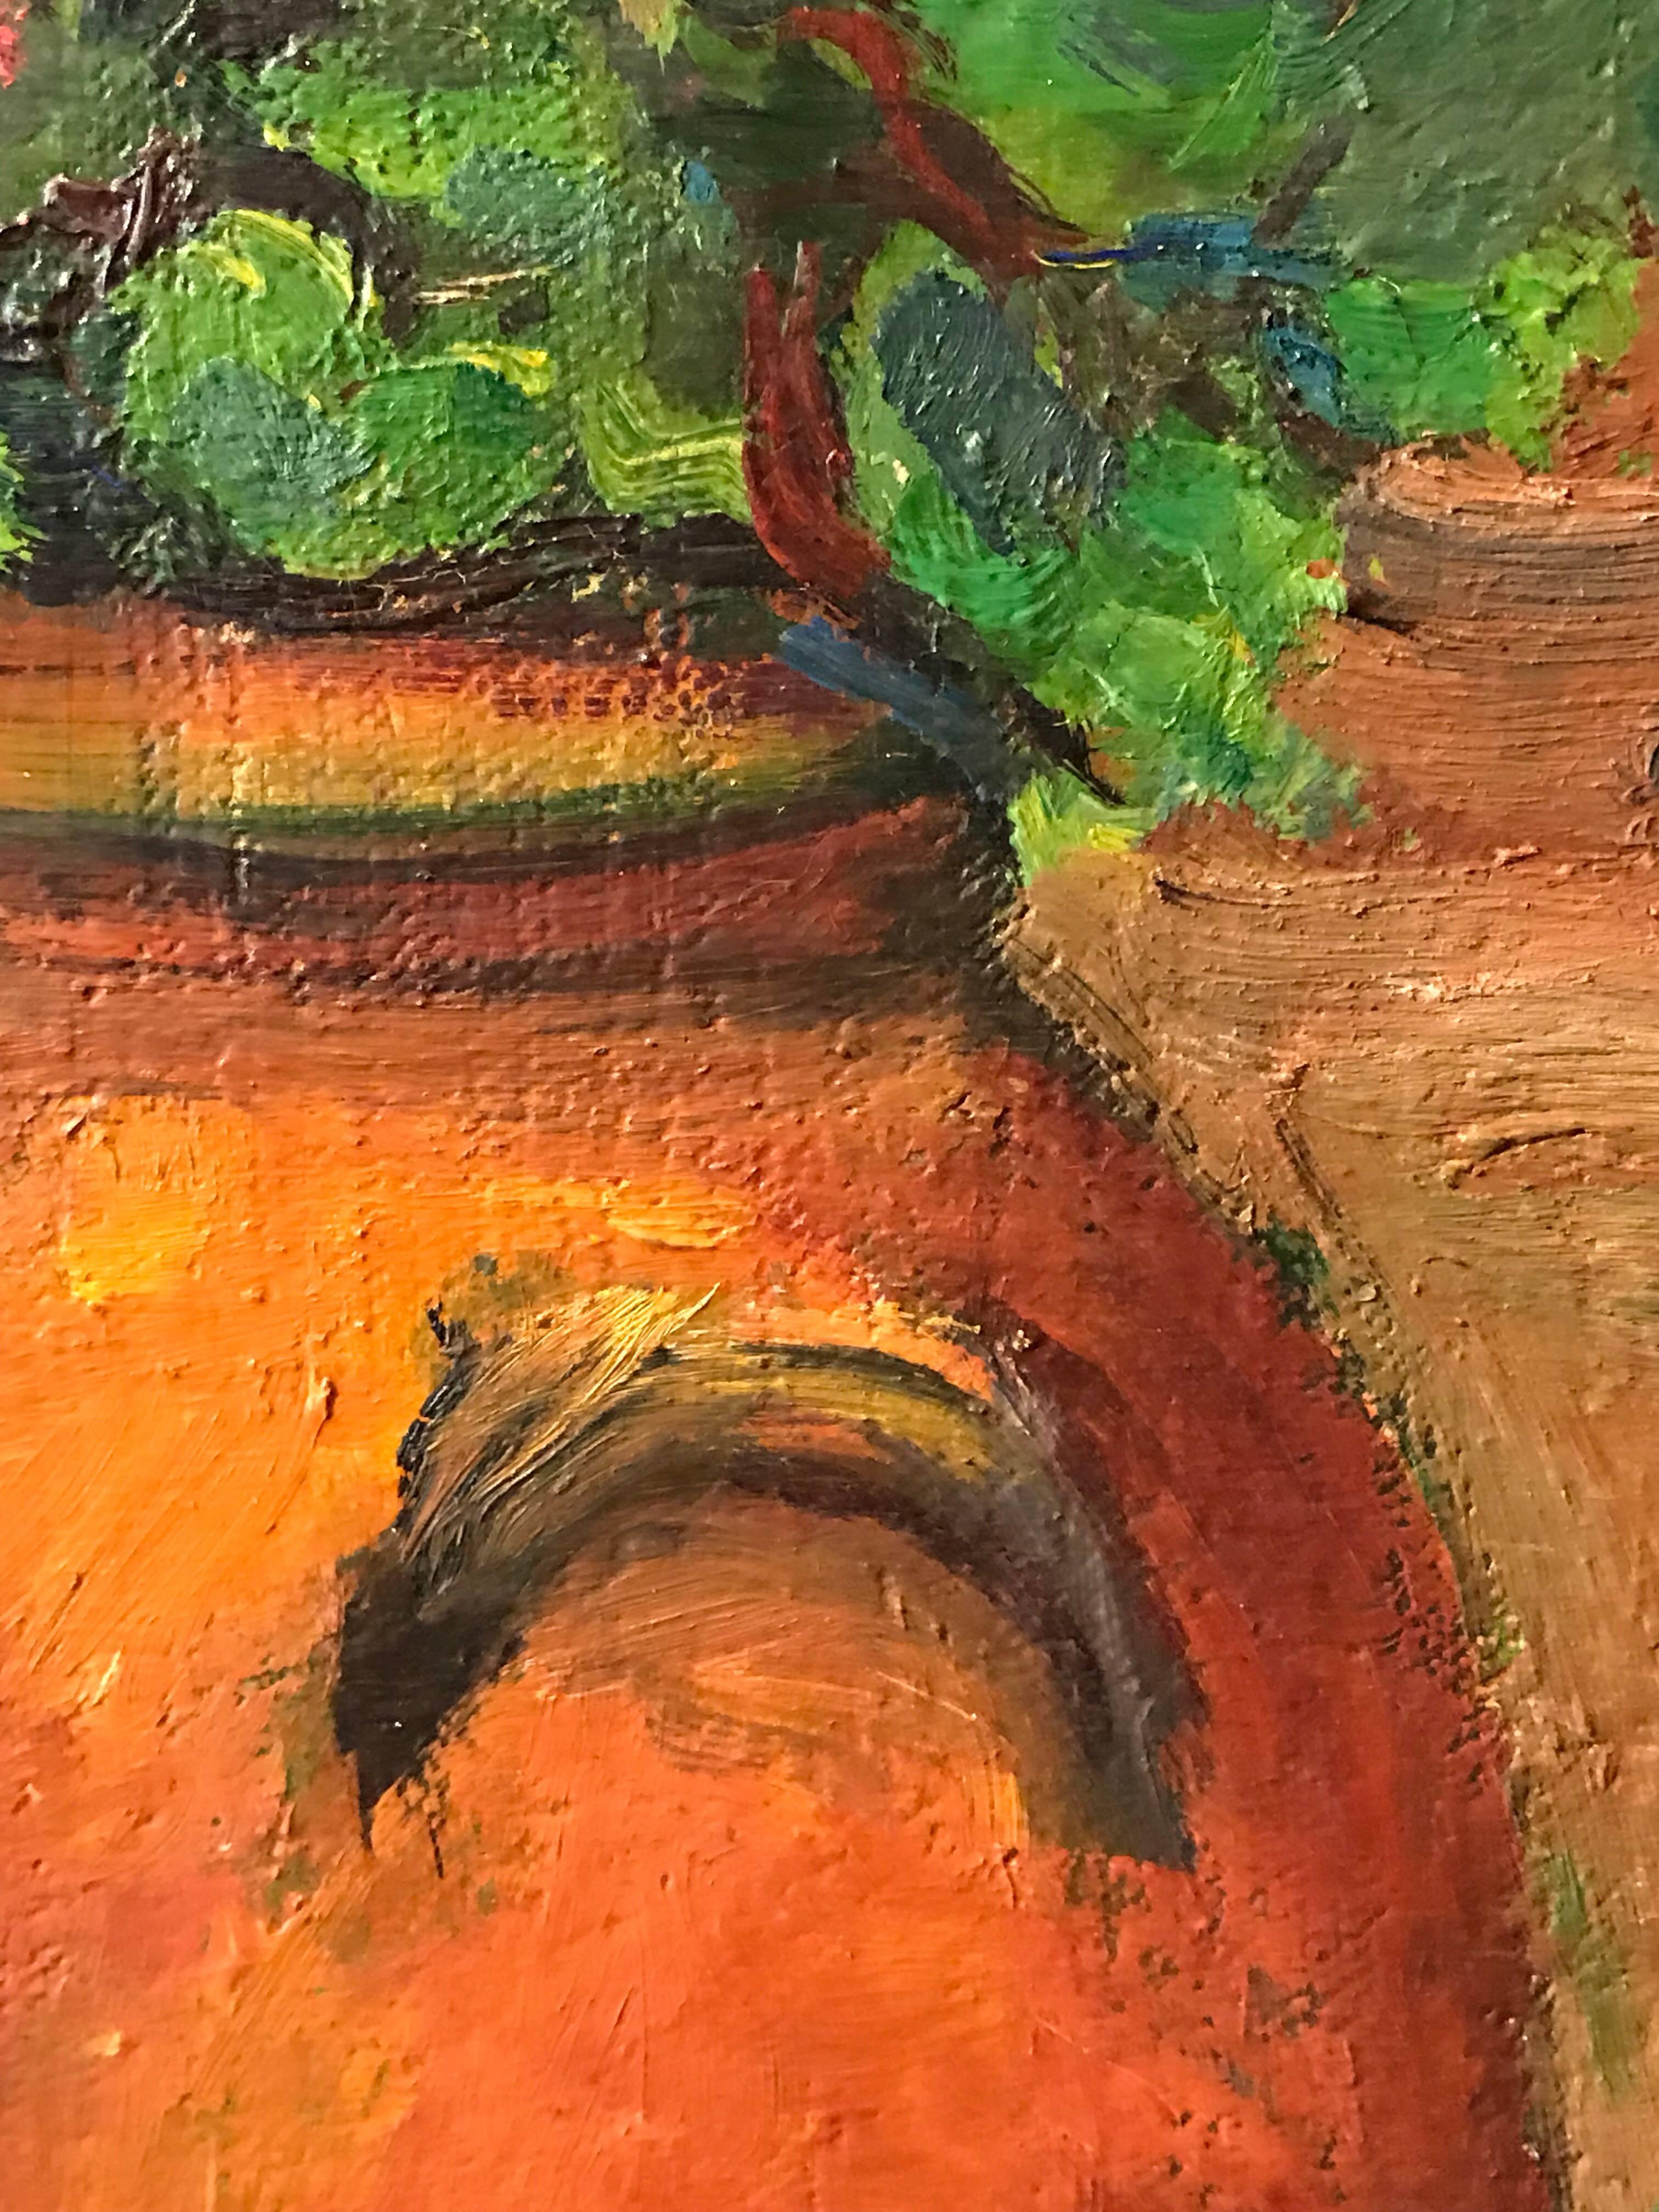 Fleurs dans un pot en terre cuite - Peinture à l'huile impressionniste française - Post-impressionnisme Painting par Louise Jeanne Cottard-Fossey